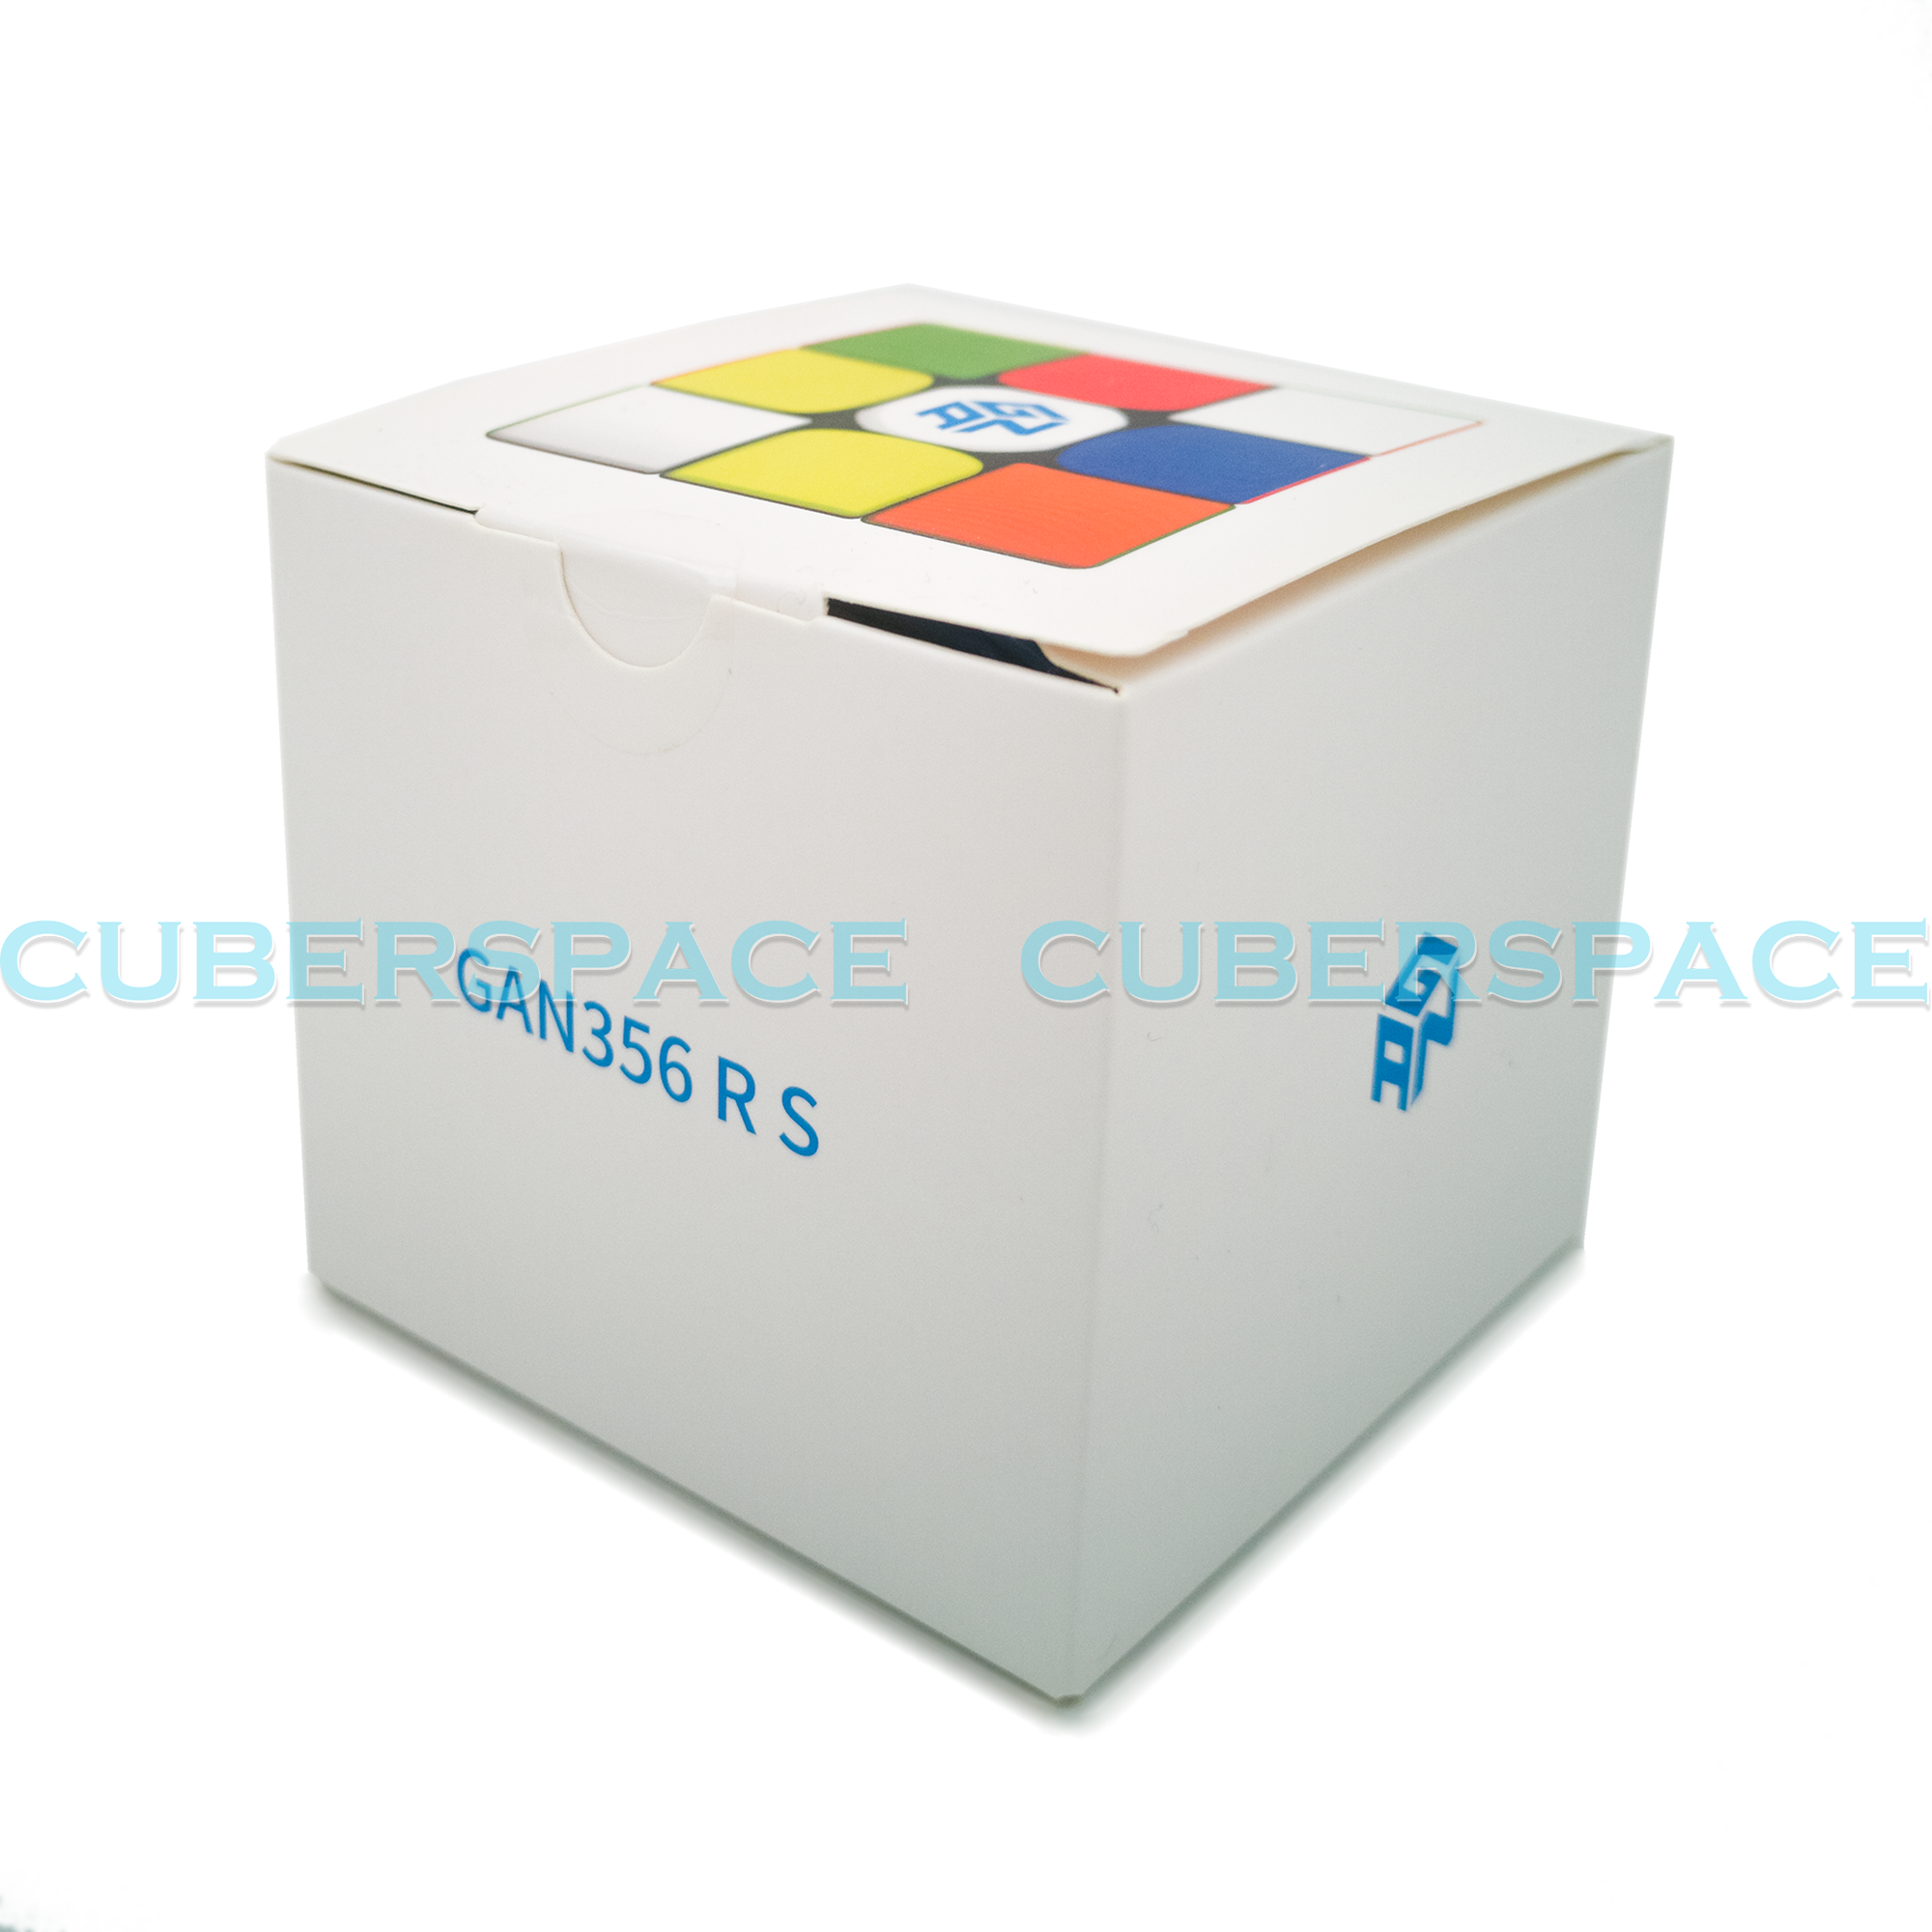 GAN 356 RS - CuberSpace